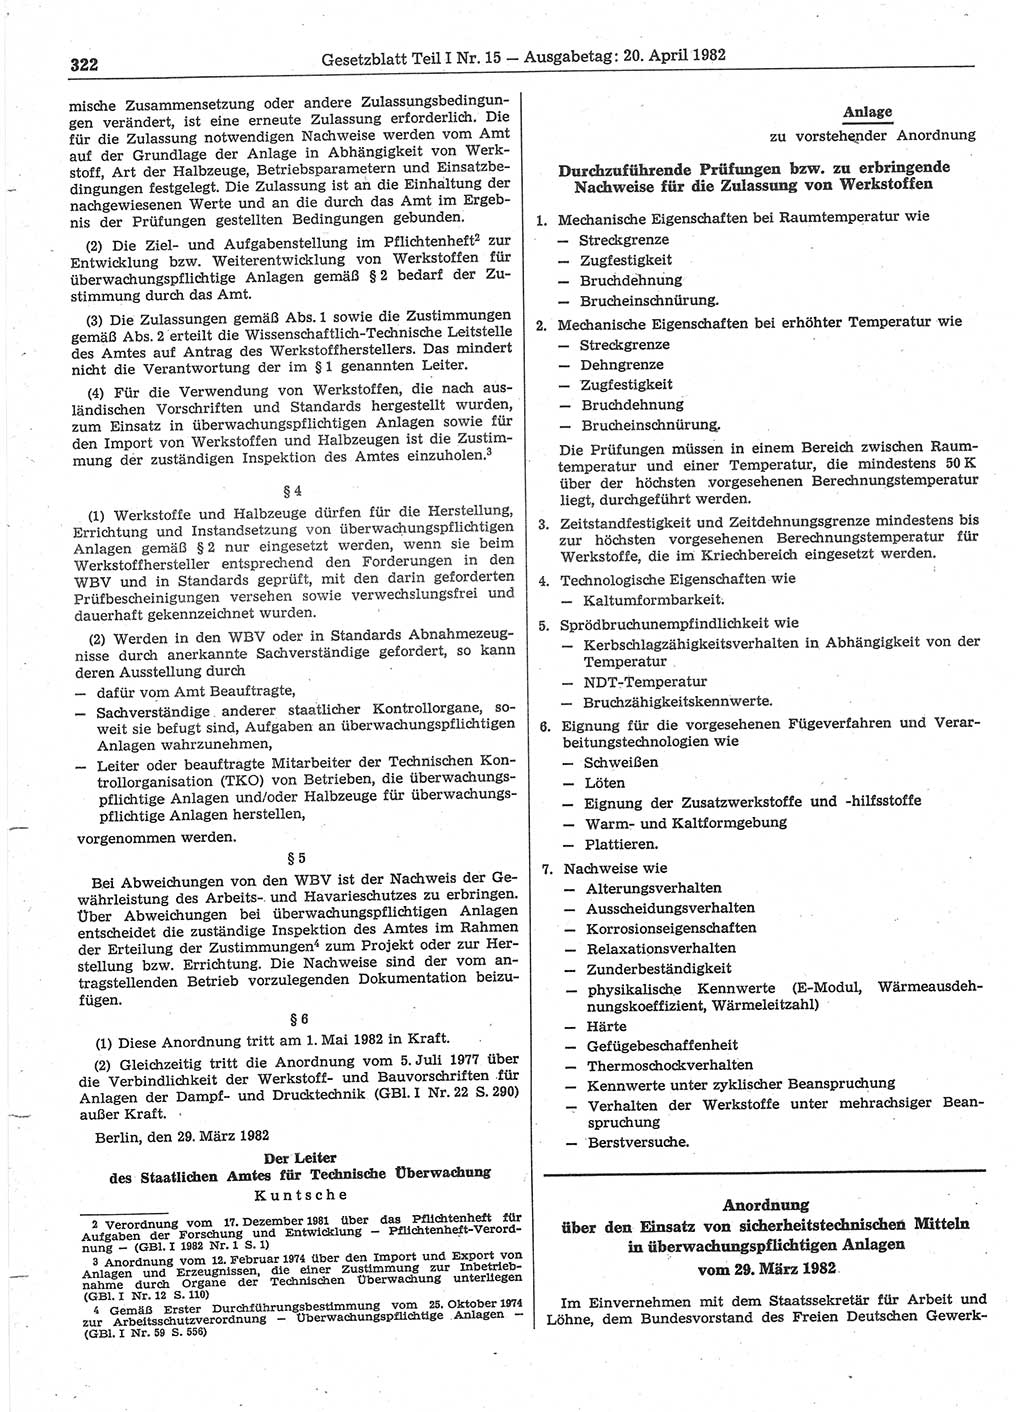 Gesetzblatt (GBl.) der Deutschen Demokratischen Republik (DDR) Teil Ⅰ 1982, Seite 322 (GBl. DDR Ⅰ 1982, S. 322)